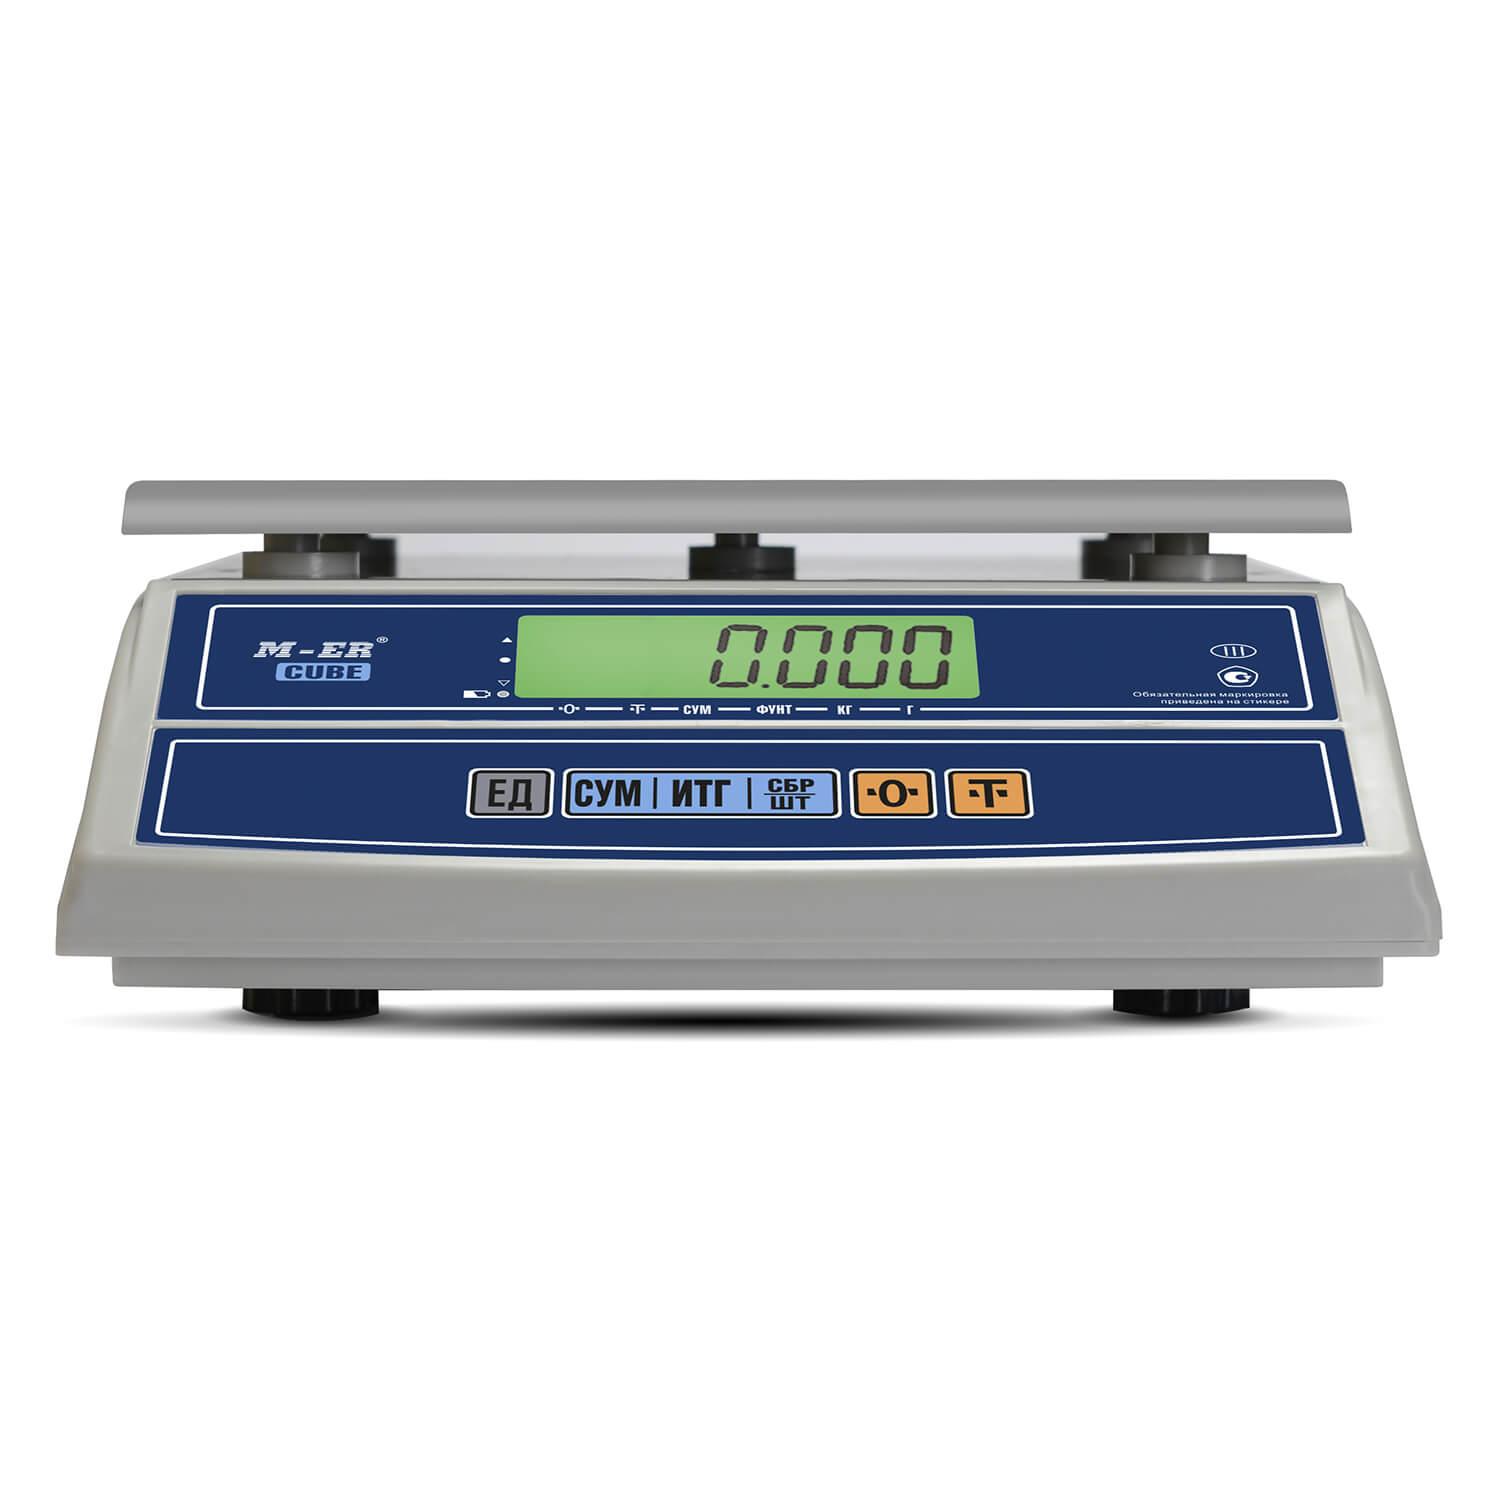 Фасовочные настольные весы M-ER 326 AF-6.1 "Cube" LCD (3052)